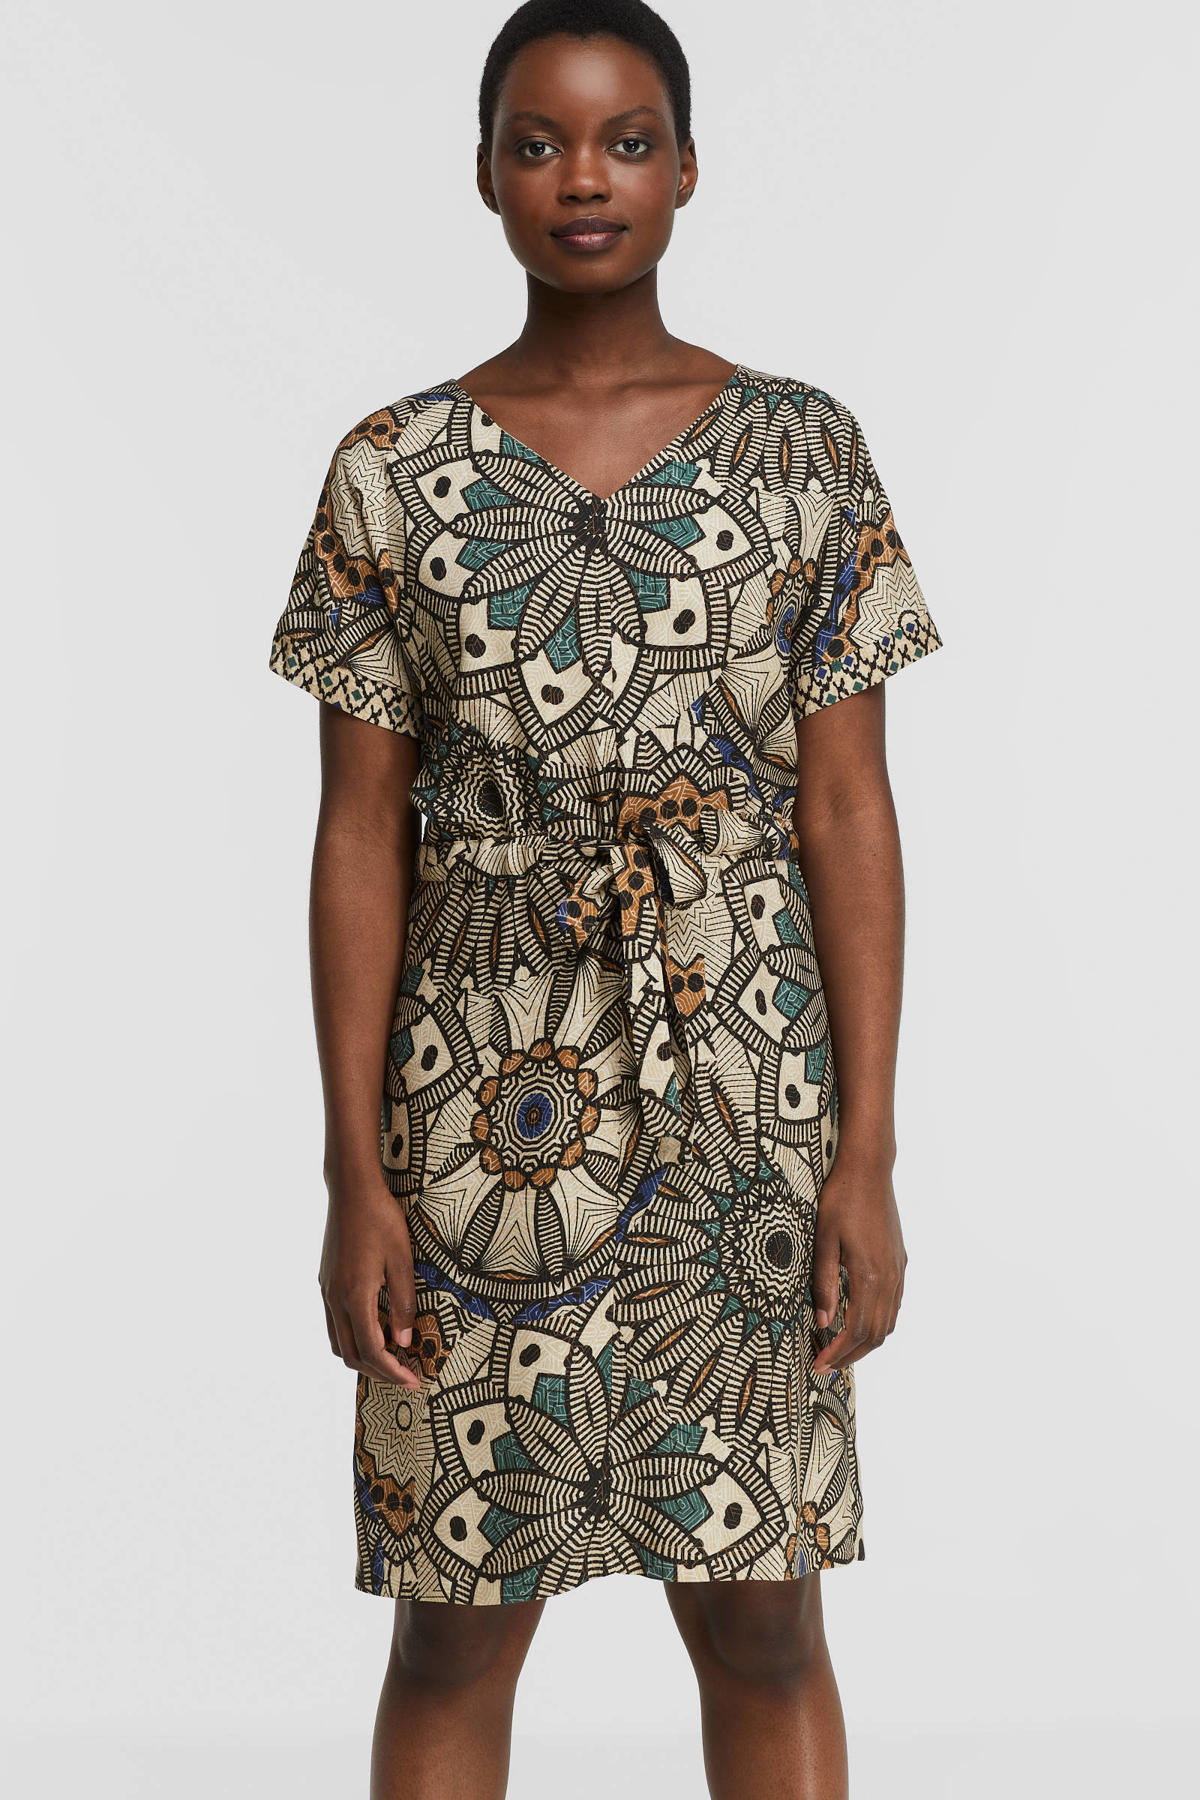 Buik Comorama koolhydraat Geisha jurk met all over print en ceintuur zand/turquoise/blauw/bruin |  wehkamp